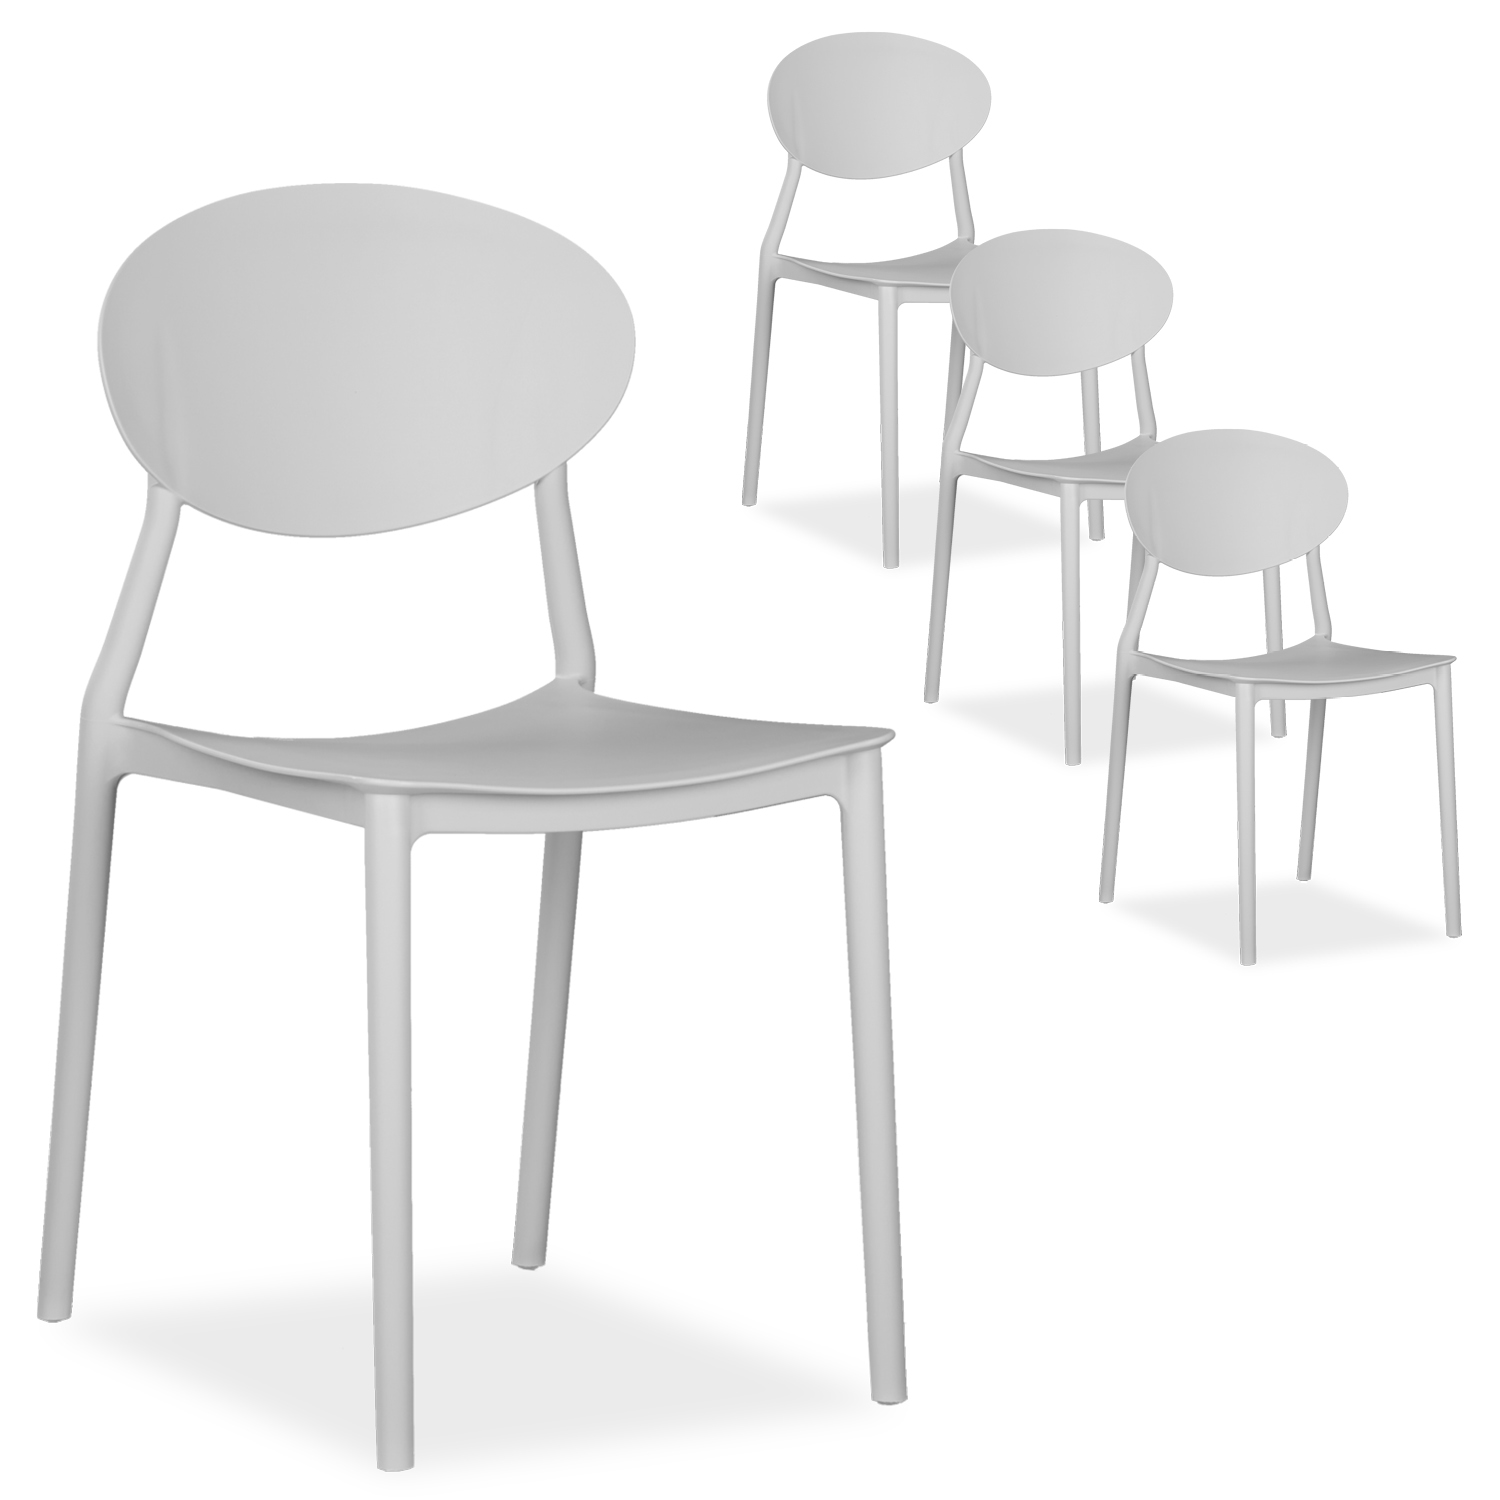 Gartenstuhl 4er Set in 5 Farben Stühle Küchenstühle Kunststoff Stapelstühle Balkonstuhl Outdoor-Stuhl